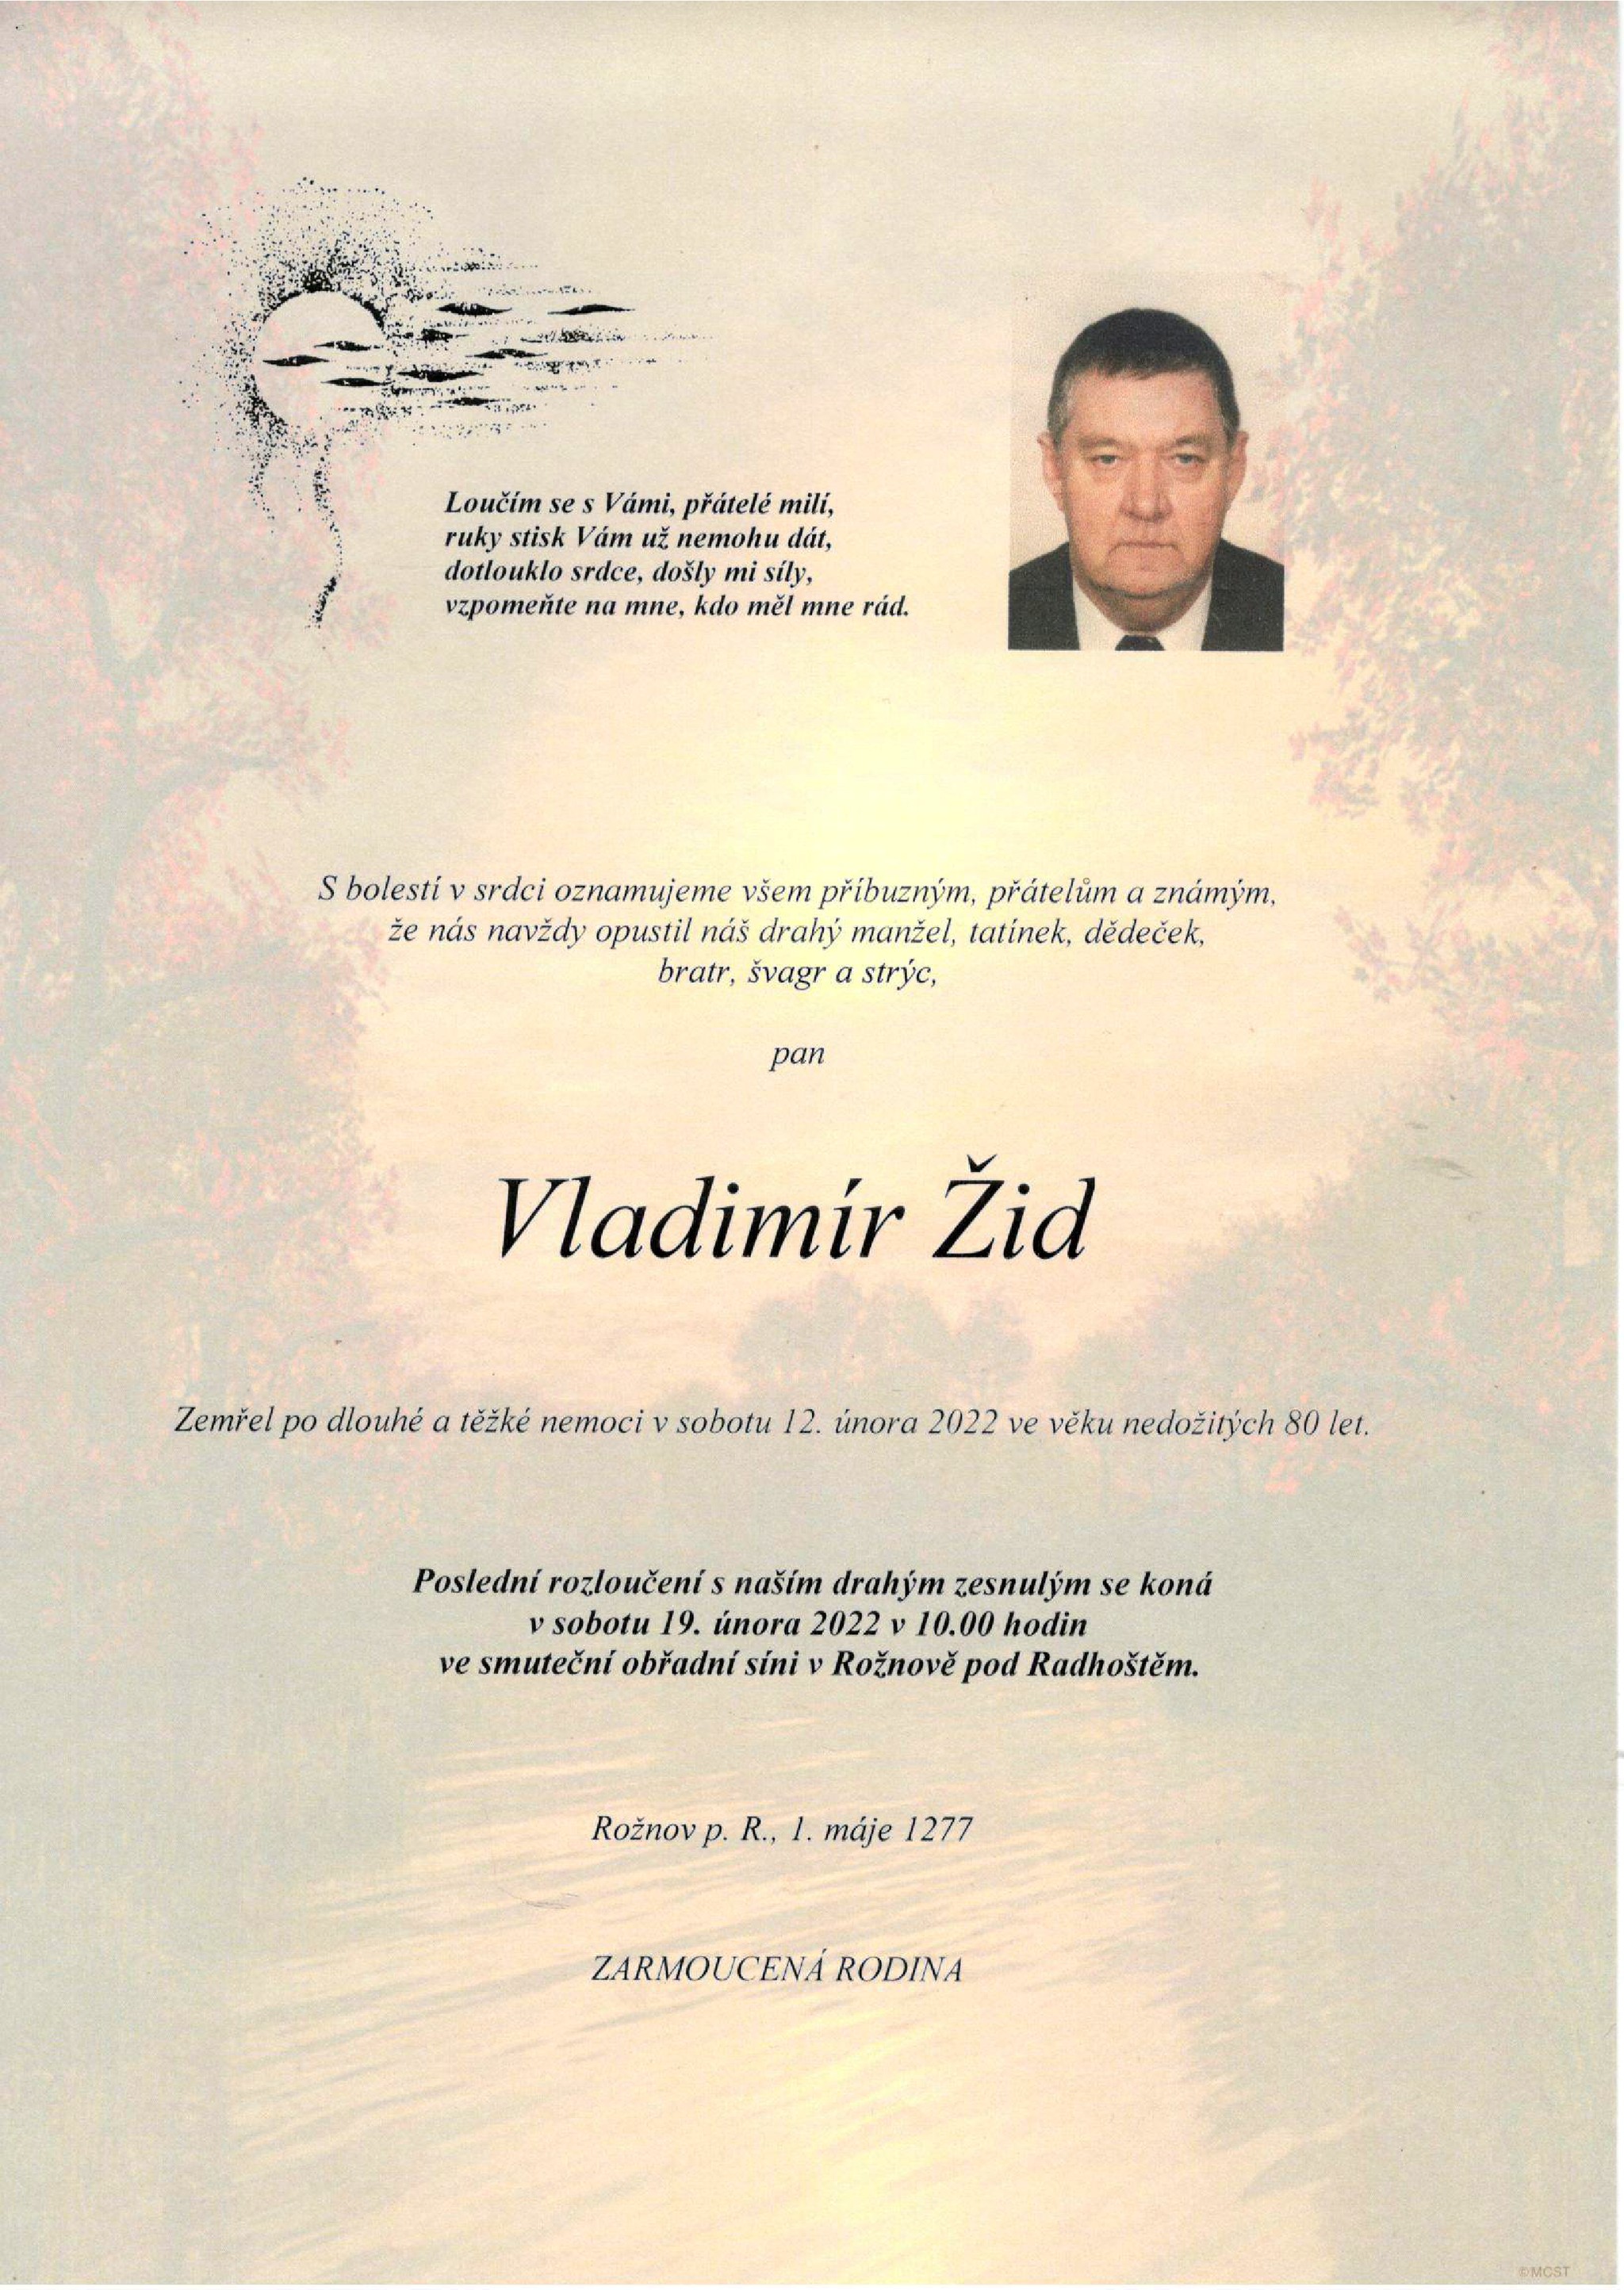 Vladimír Žid